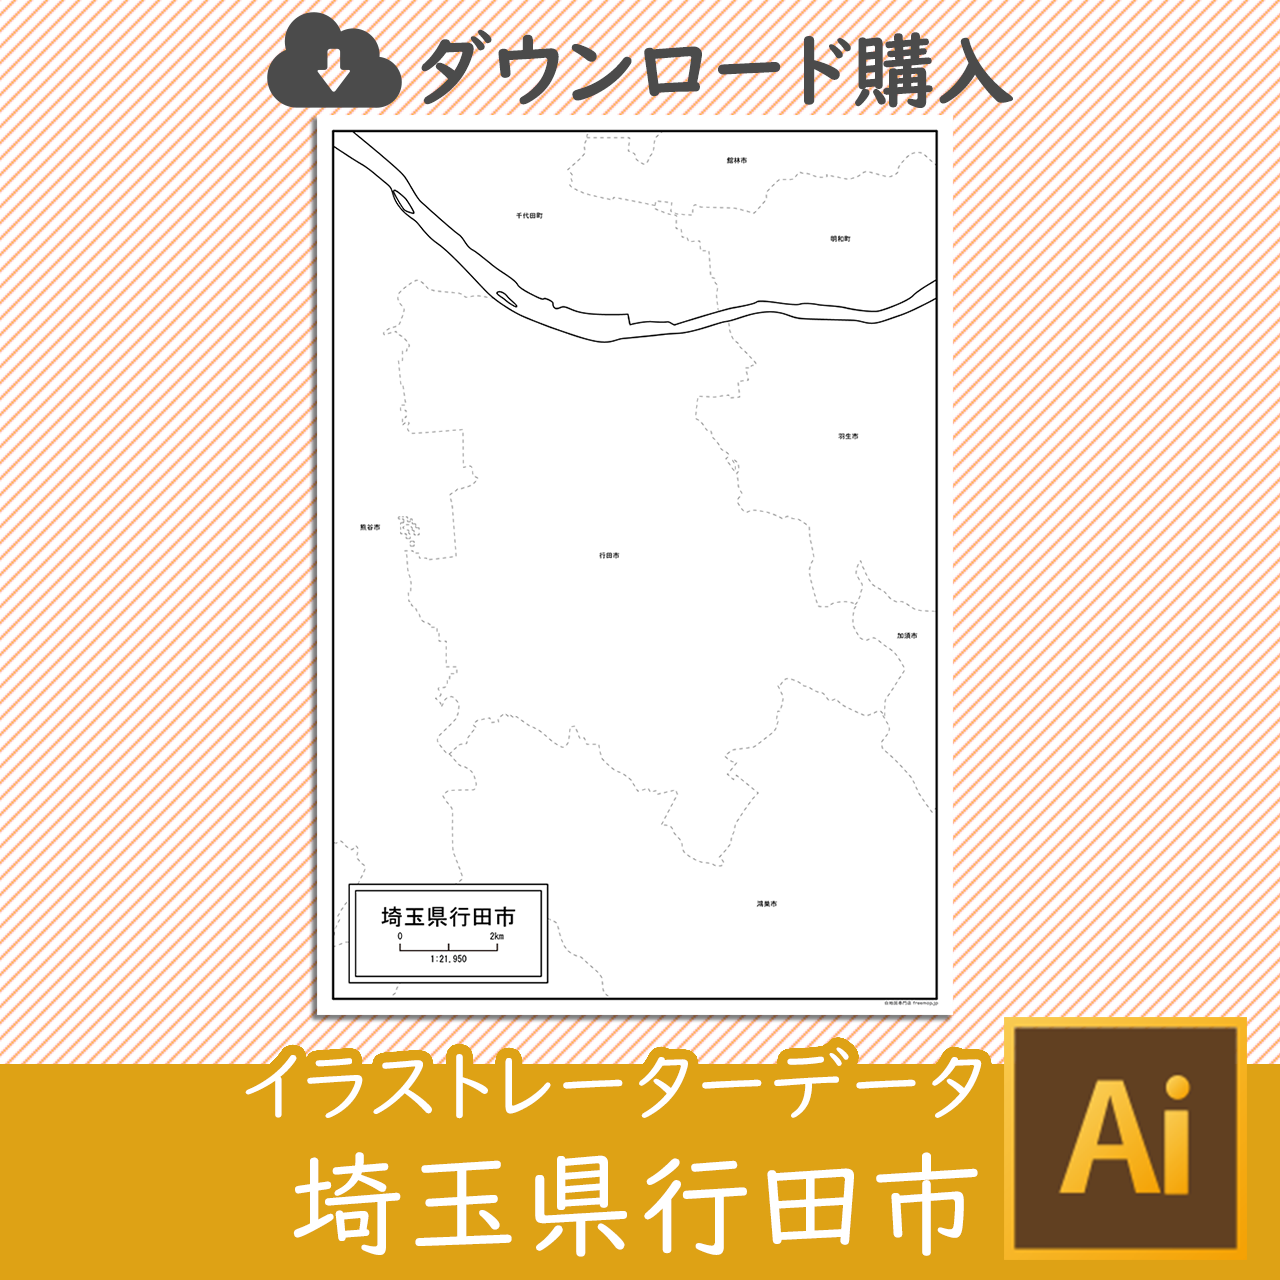 行田市のaiデータのサムネイル画像